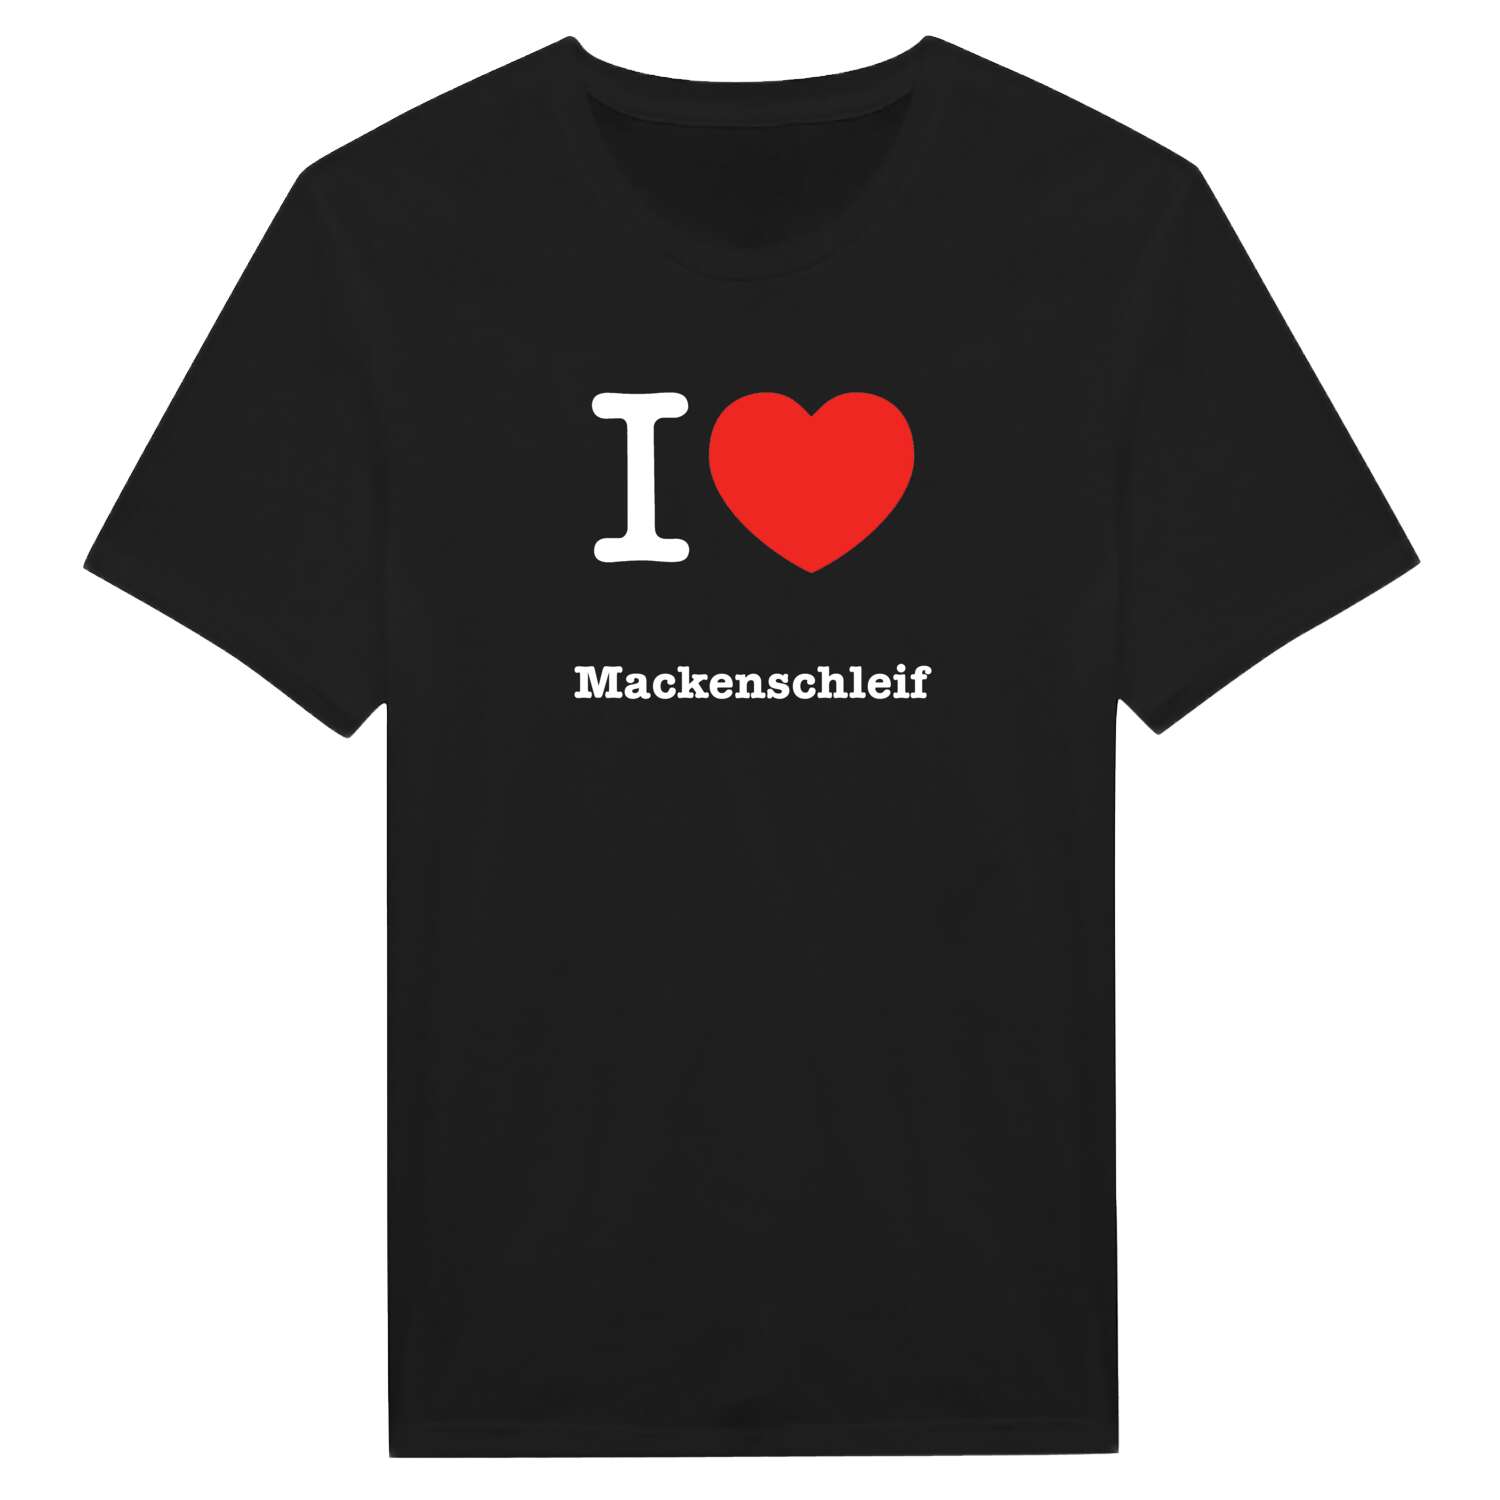 Mackenschleif T-Shirt »I love«